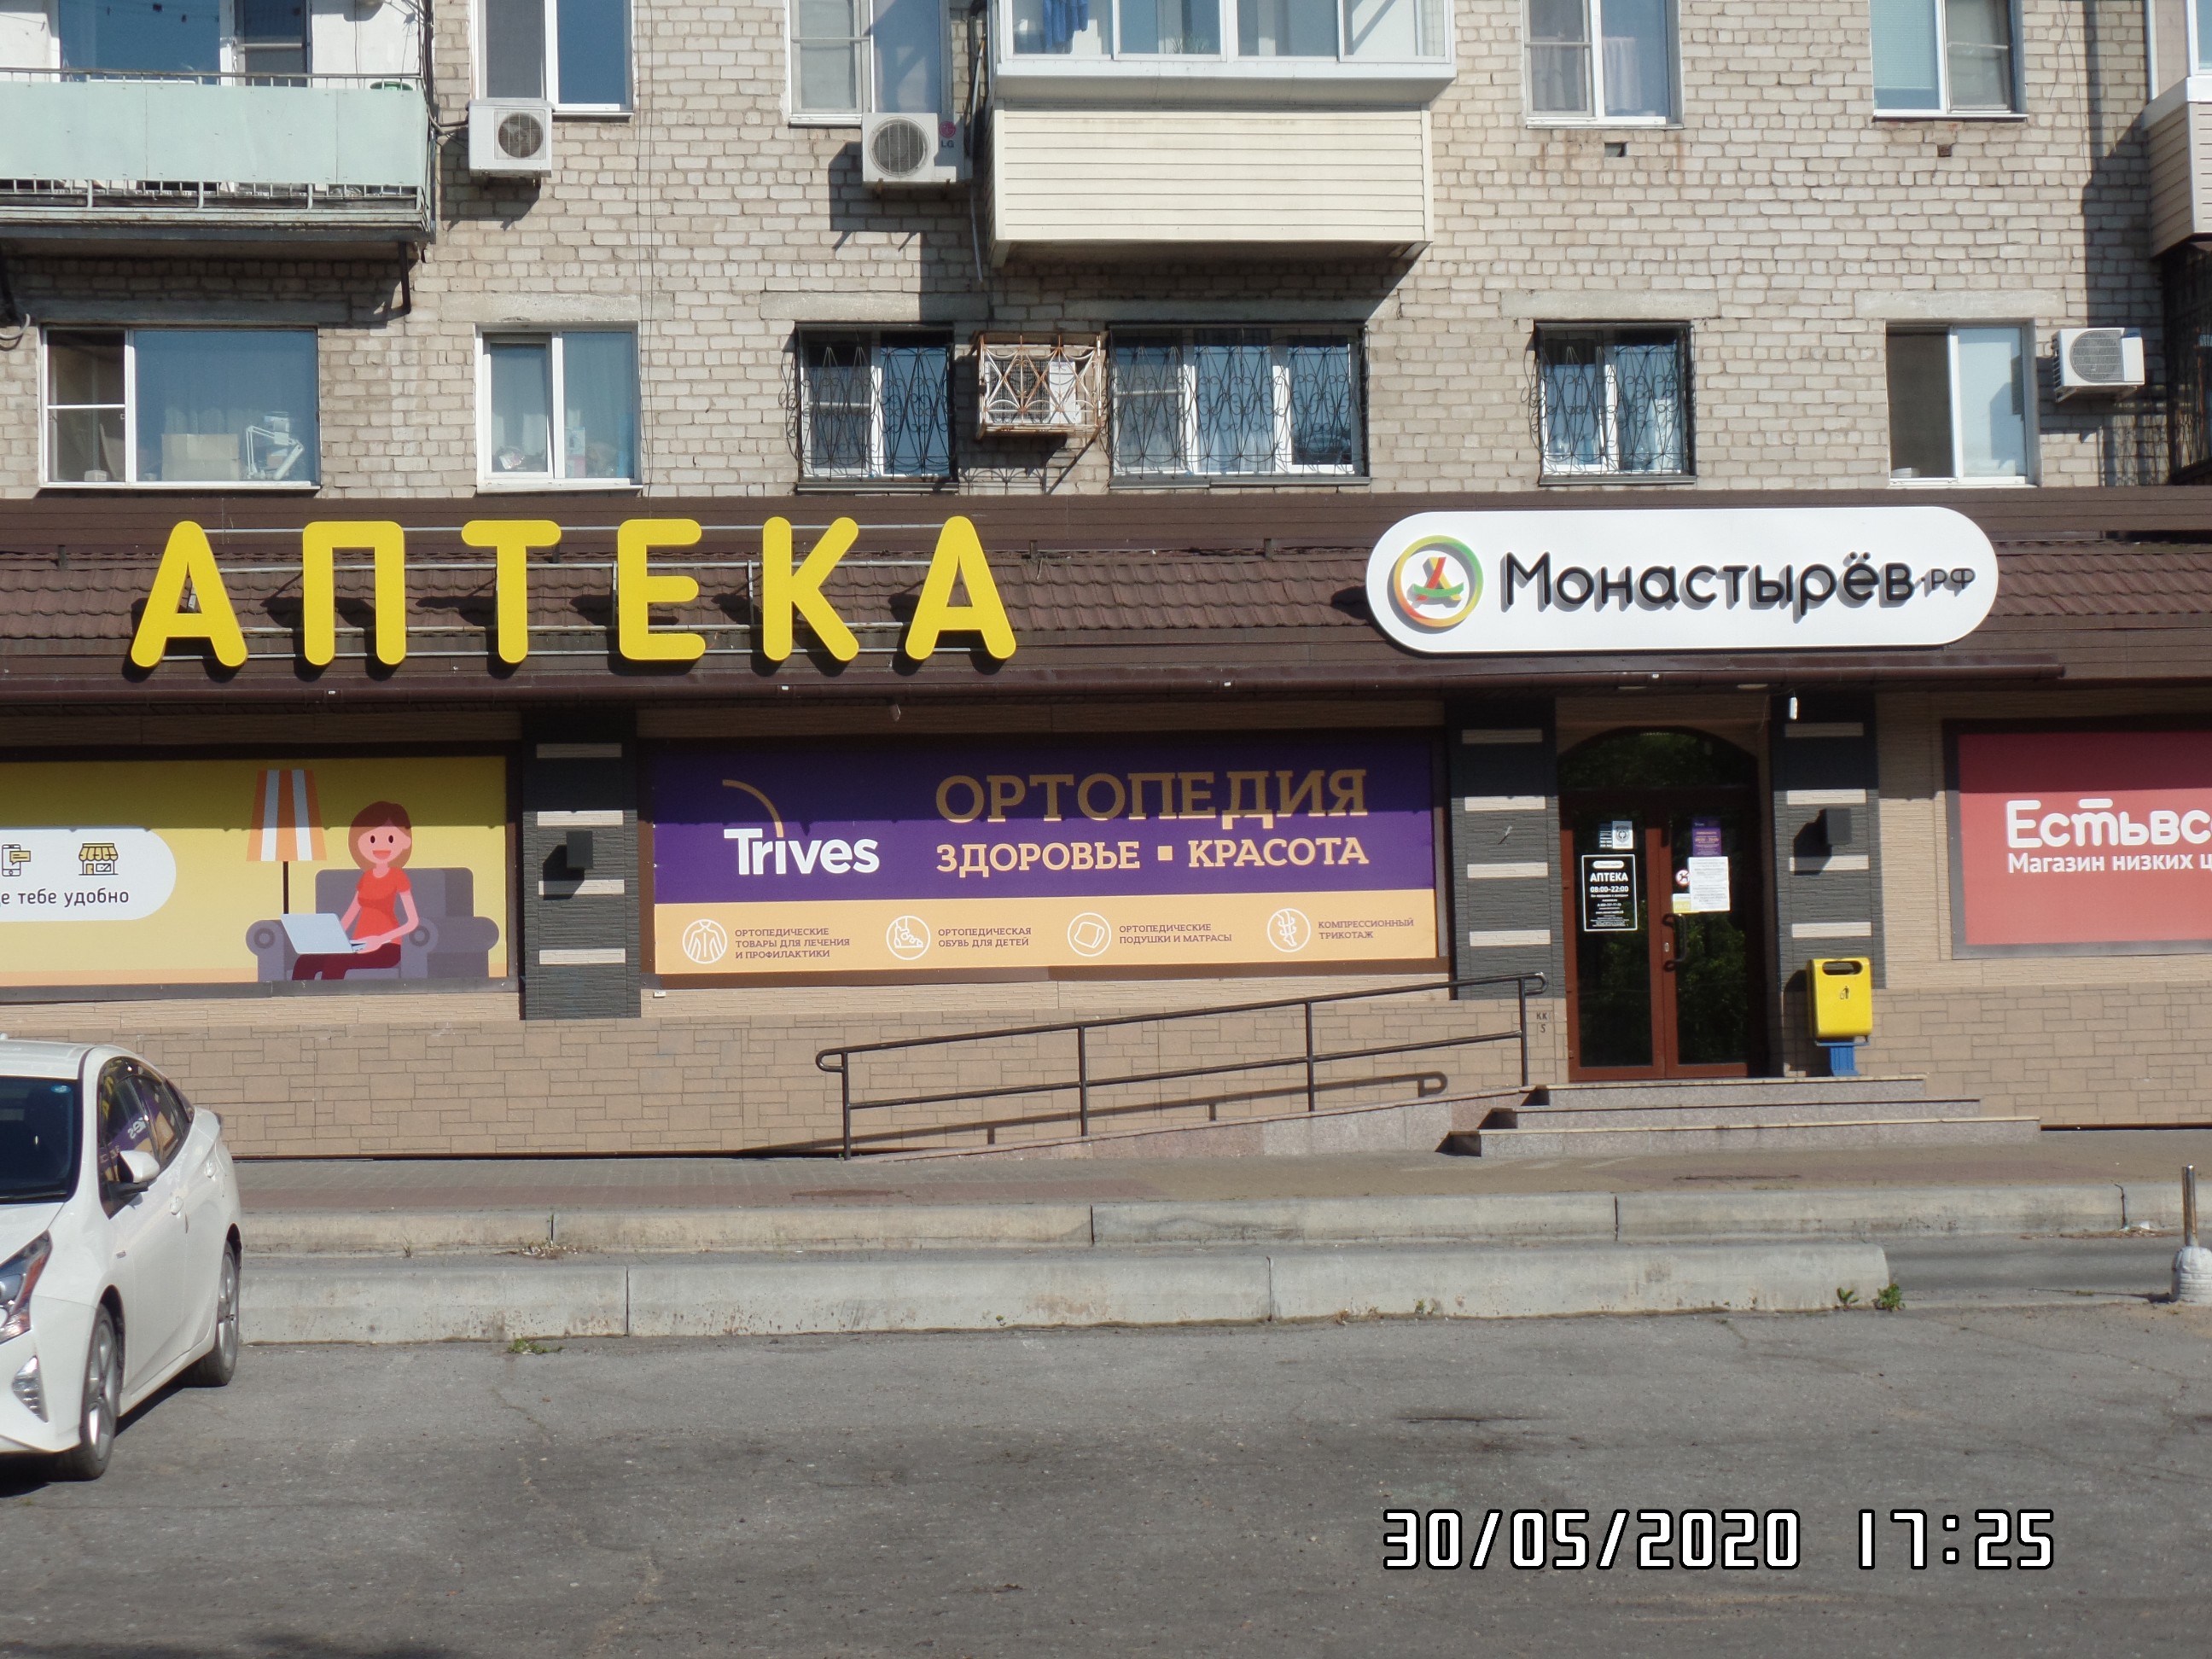 Монастырев Интернет Магазин Владивосток Каталог